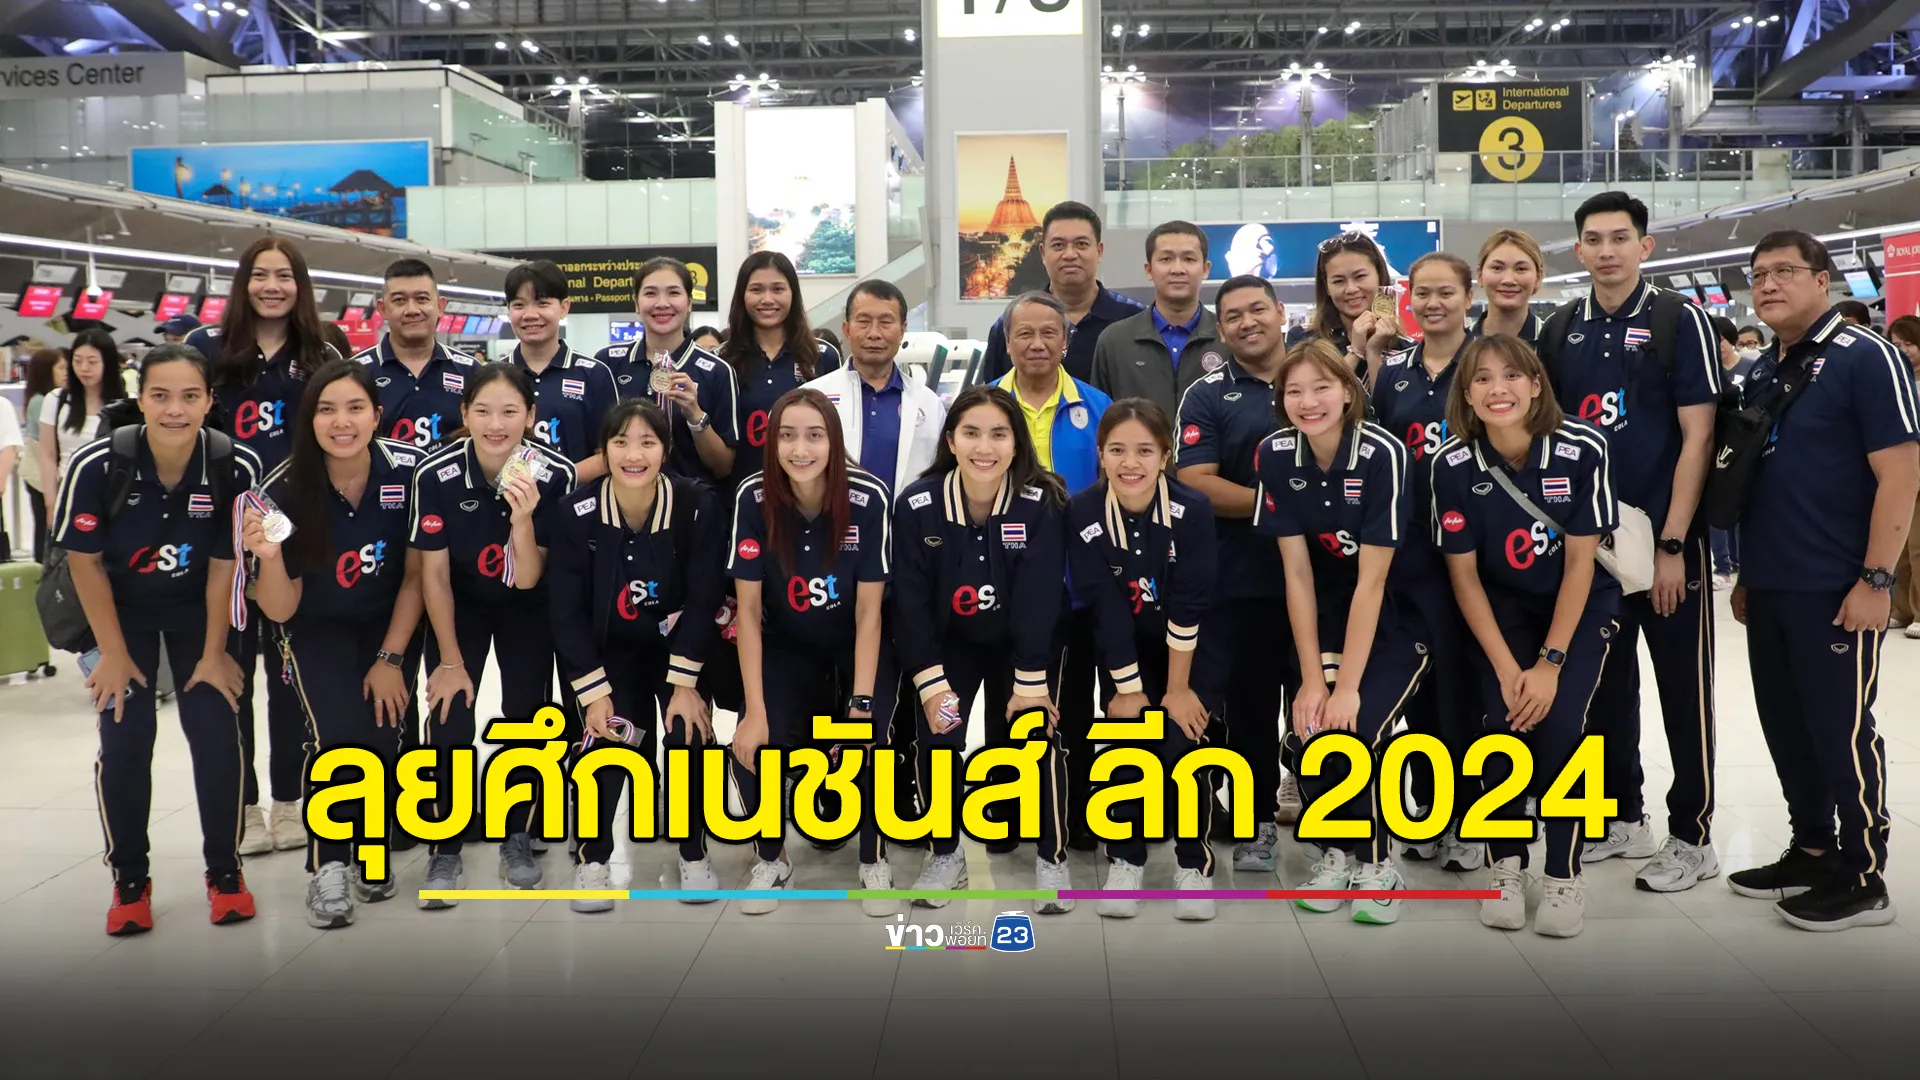 เปิดรายชื่อ"วอลเลย์บอลไทย"ทีมหญิง ลุยศึกเนชันส์ ลีก 2024 